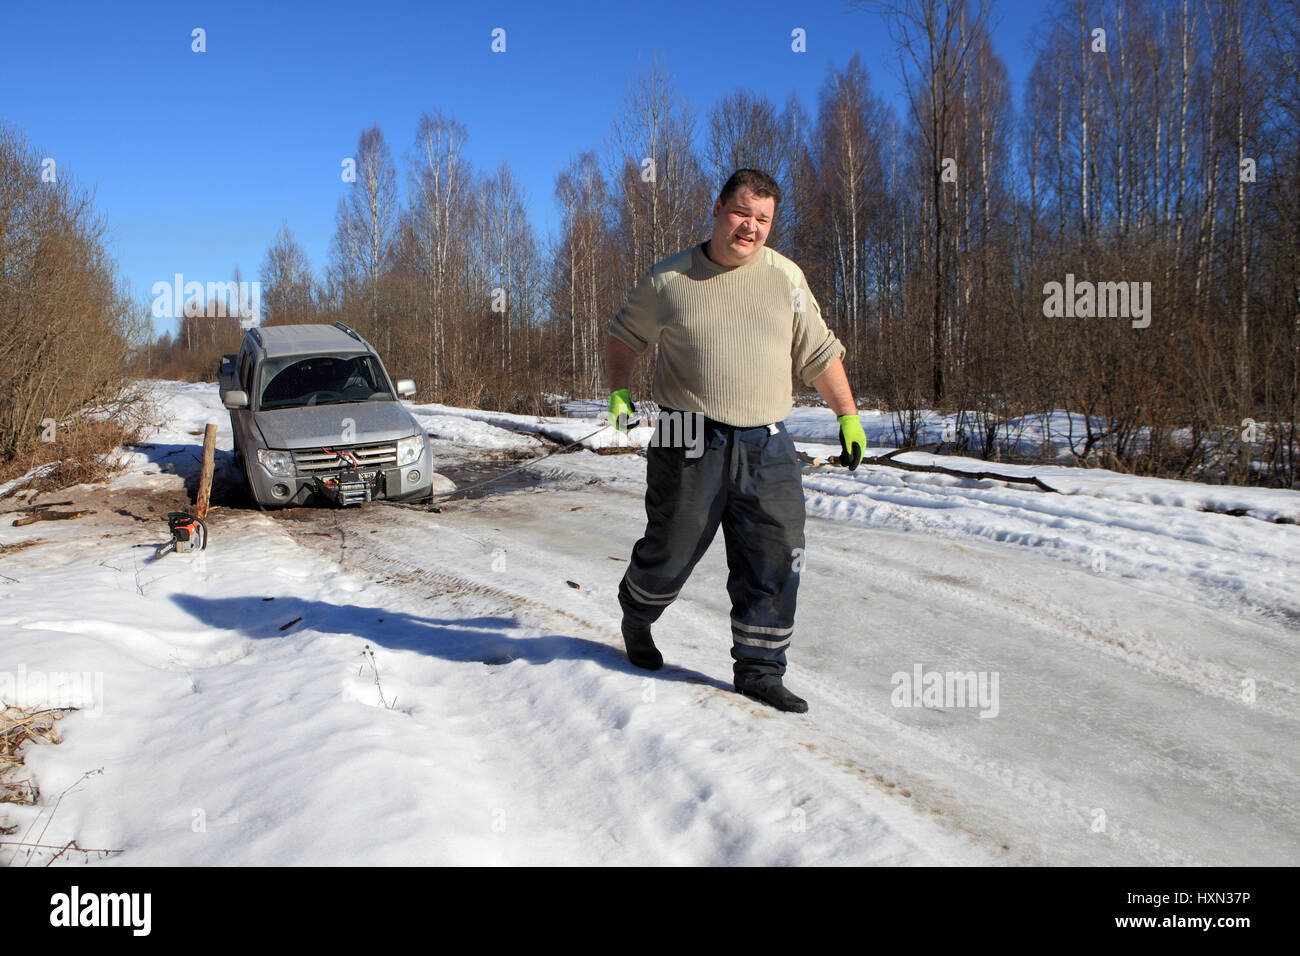 Nazia Village, Leningrad Region, Russland - 17. März 2015: Auto stecken auf einem Waldweg, Vorderrad verfiel Schlucht im Eis, der Mann zieht das Kabel Stockfoto